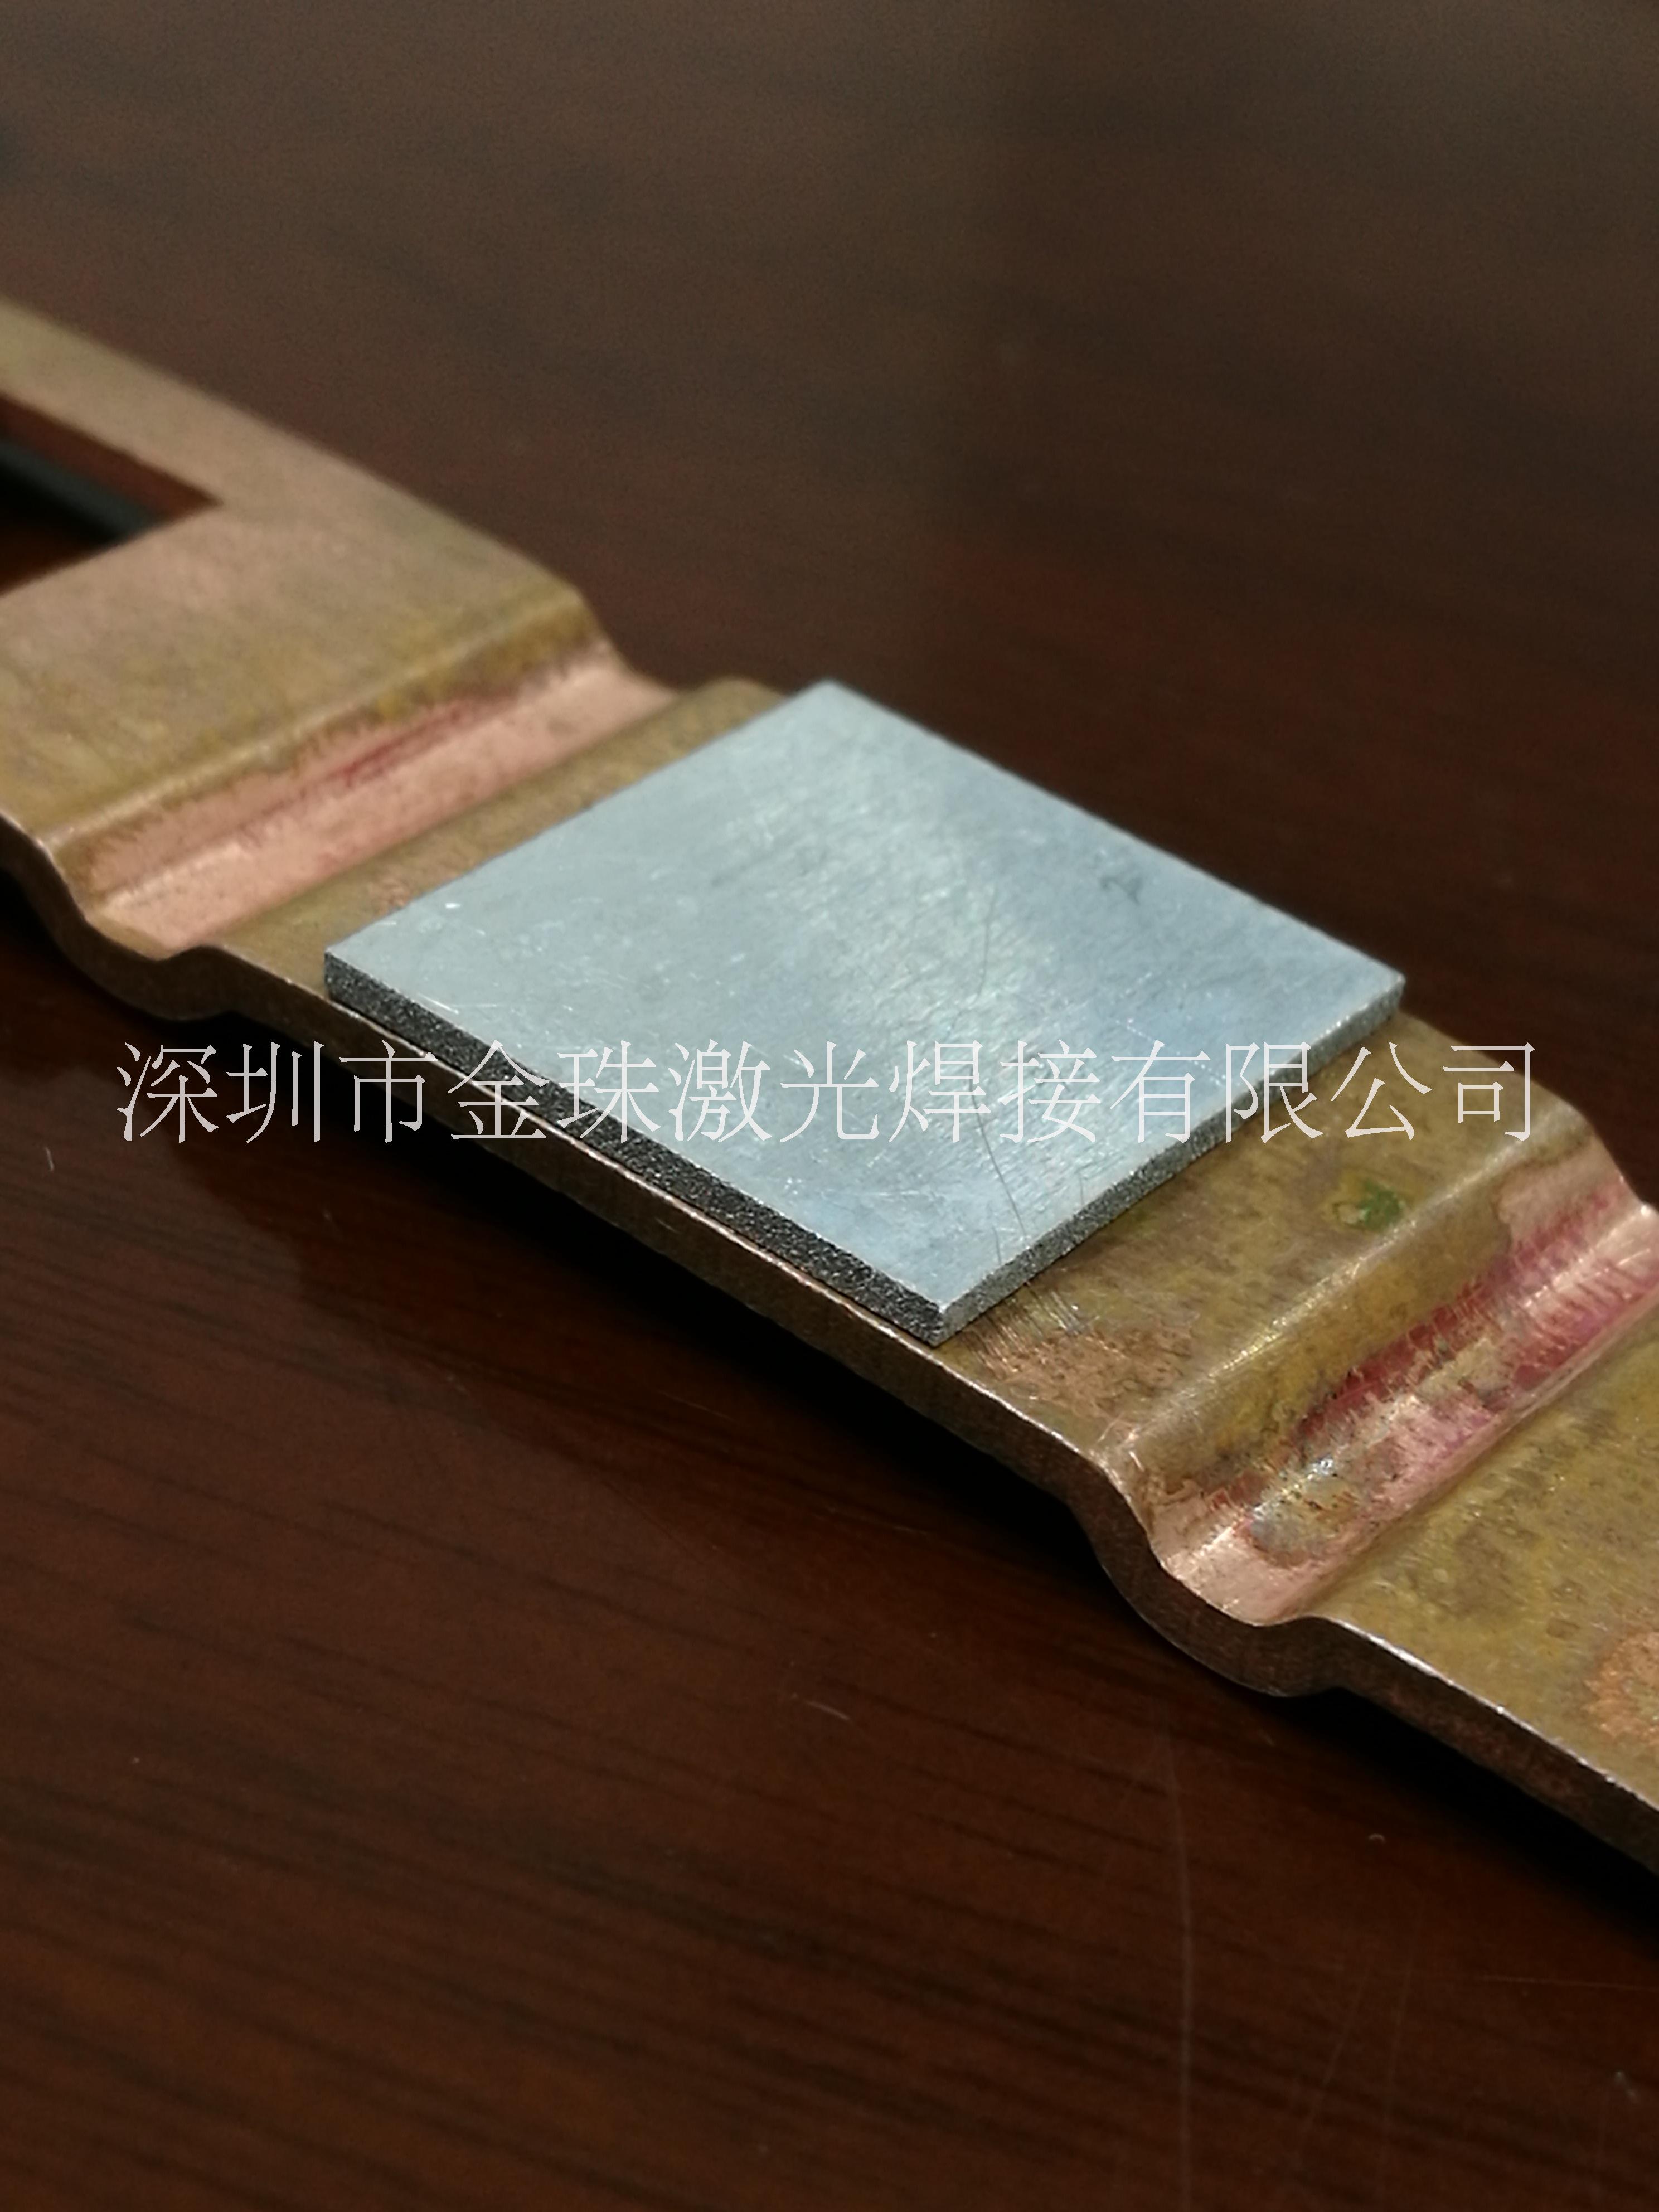 深圳厂家供应 特种材质与混合件大功率激光焊接 精密钣金加工